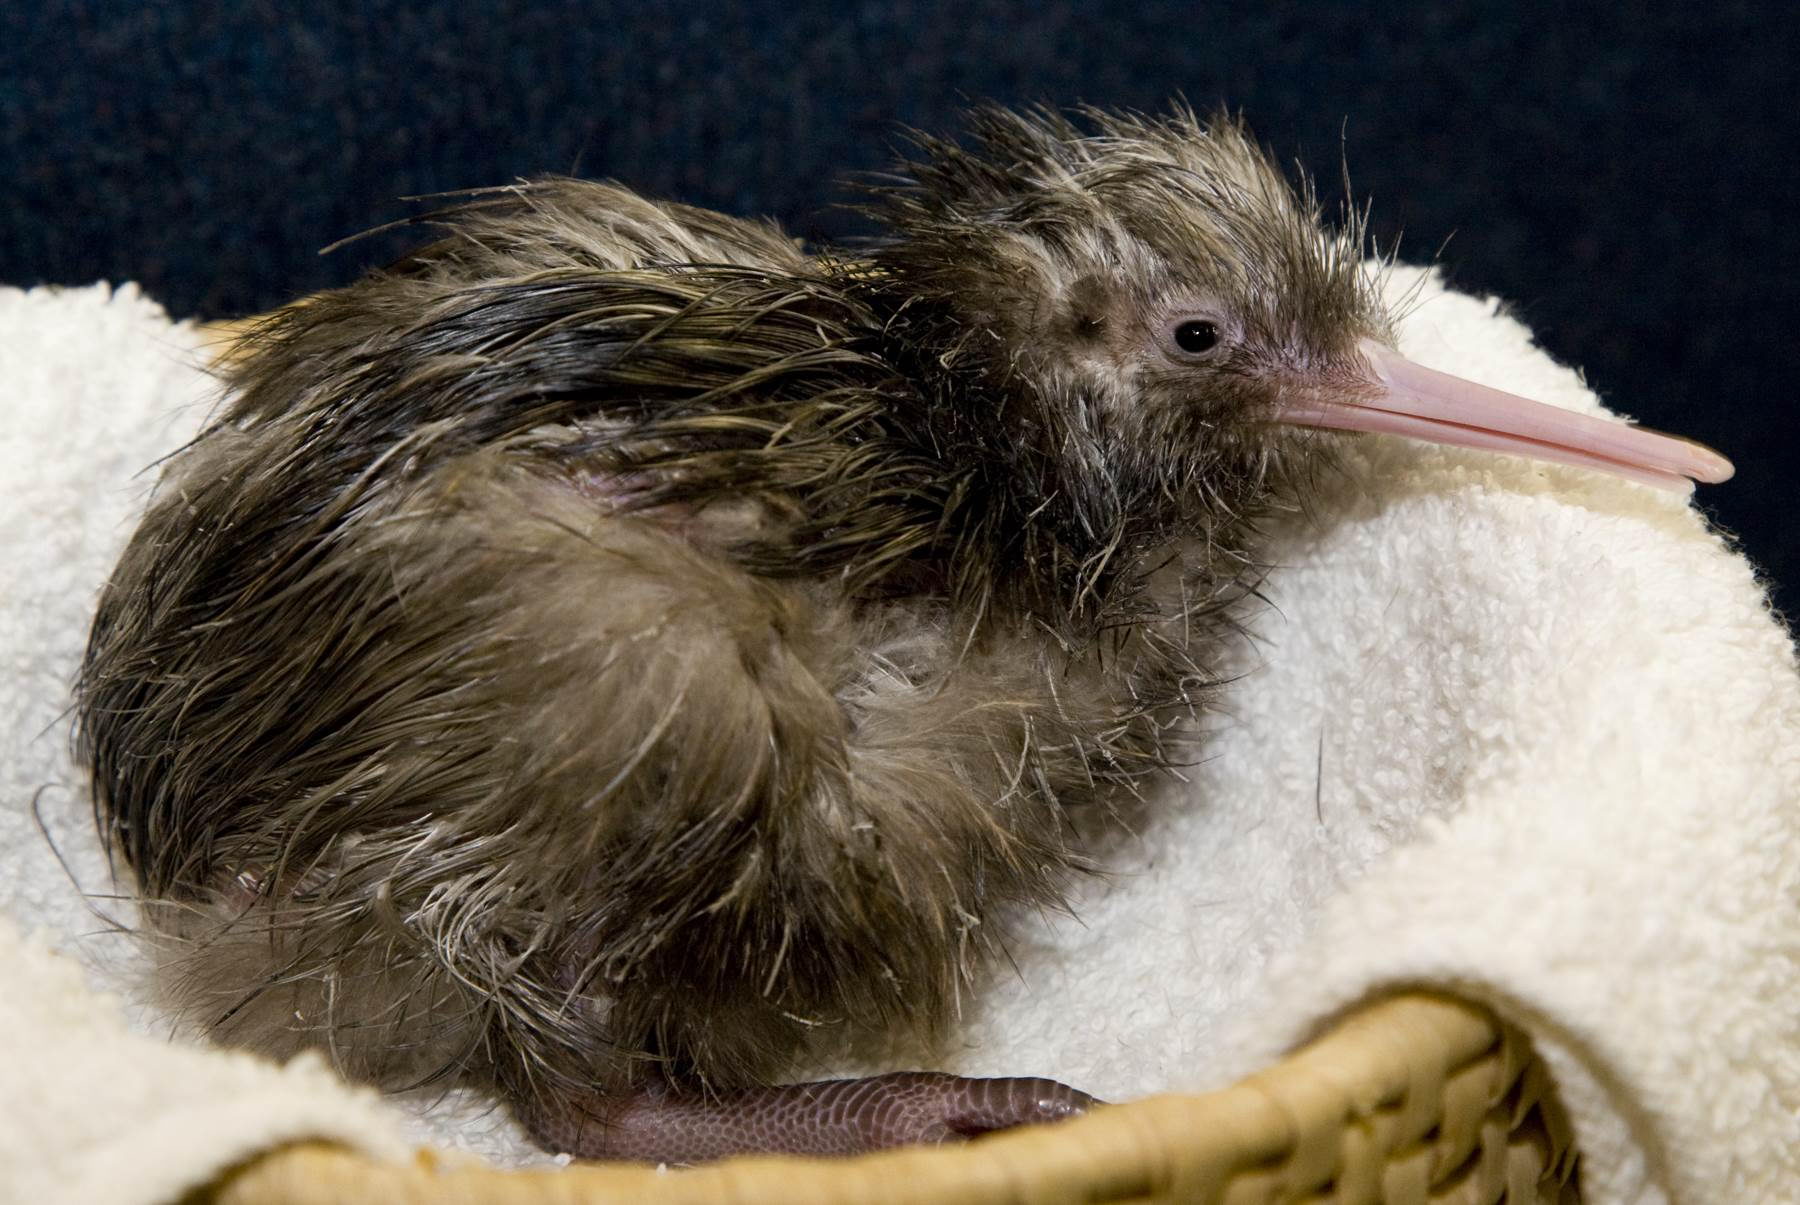 Kiwi Bird Facts - Habitat, Diet, Egg, Behavior & Species